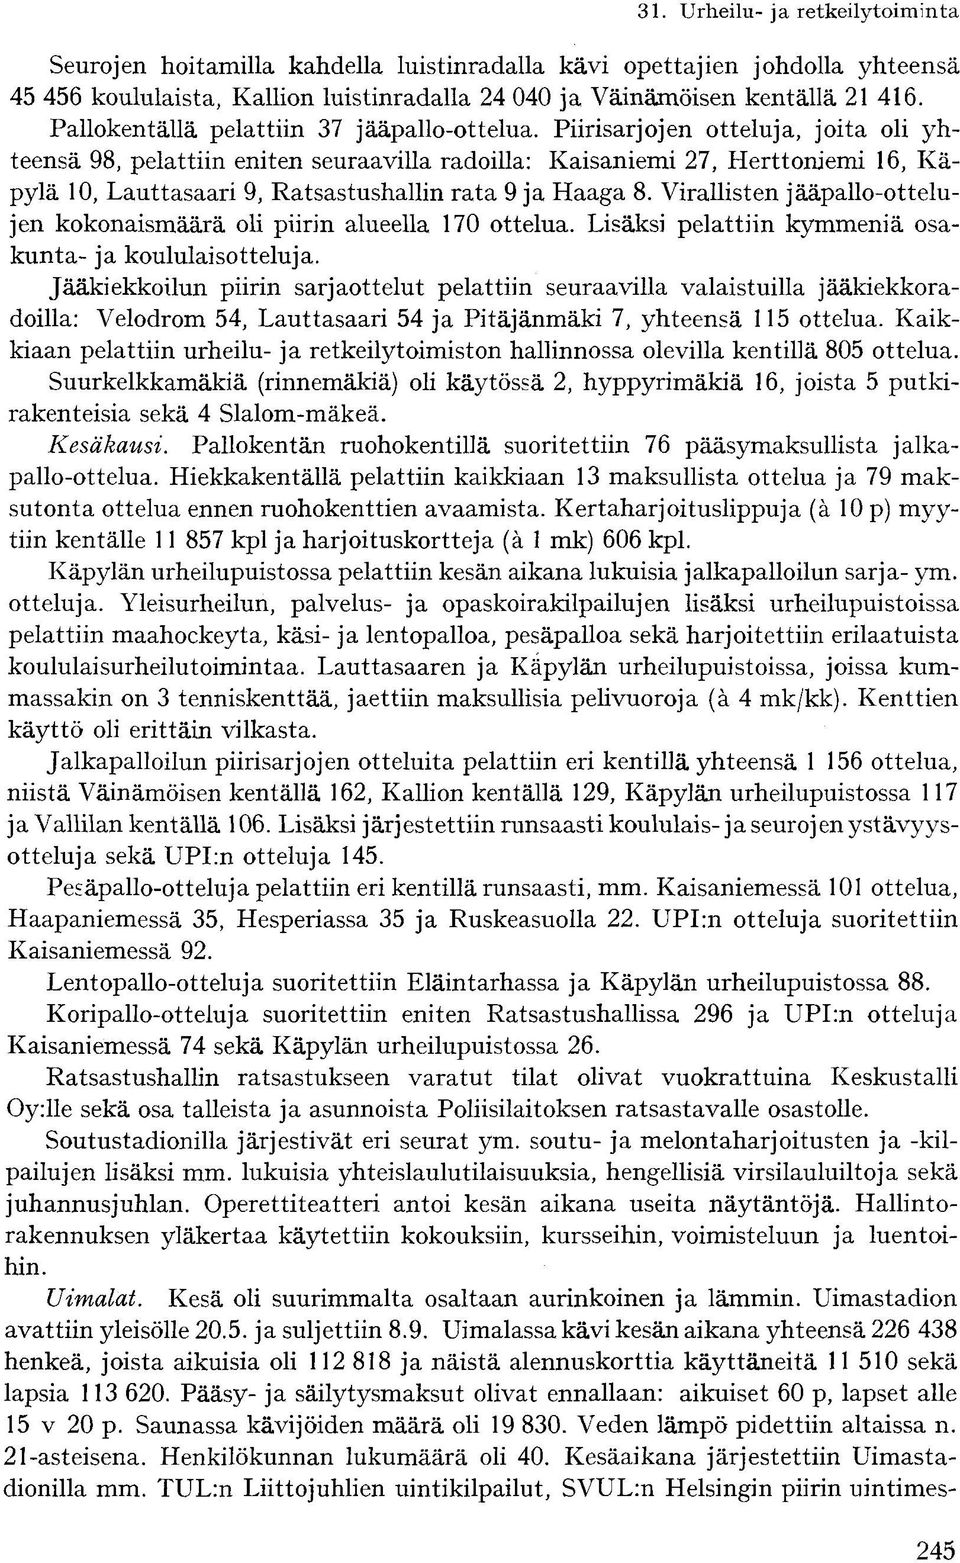 Piirisarjojen otteluja, joita oli yhteensä 98, pelattiin eniten seuraavilla radoilla: Kaisaniemi 27, Herttoniemi 16, Käpylä 10, Lauttasaari 9, Ratsastushallin rata 9 ja Haaga 8.